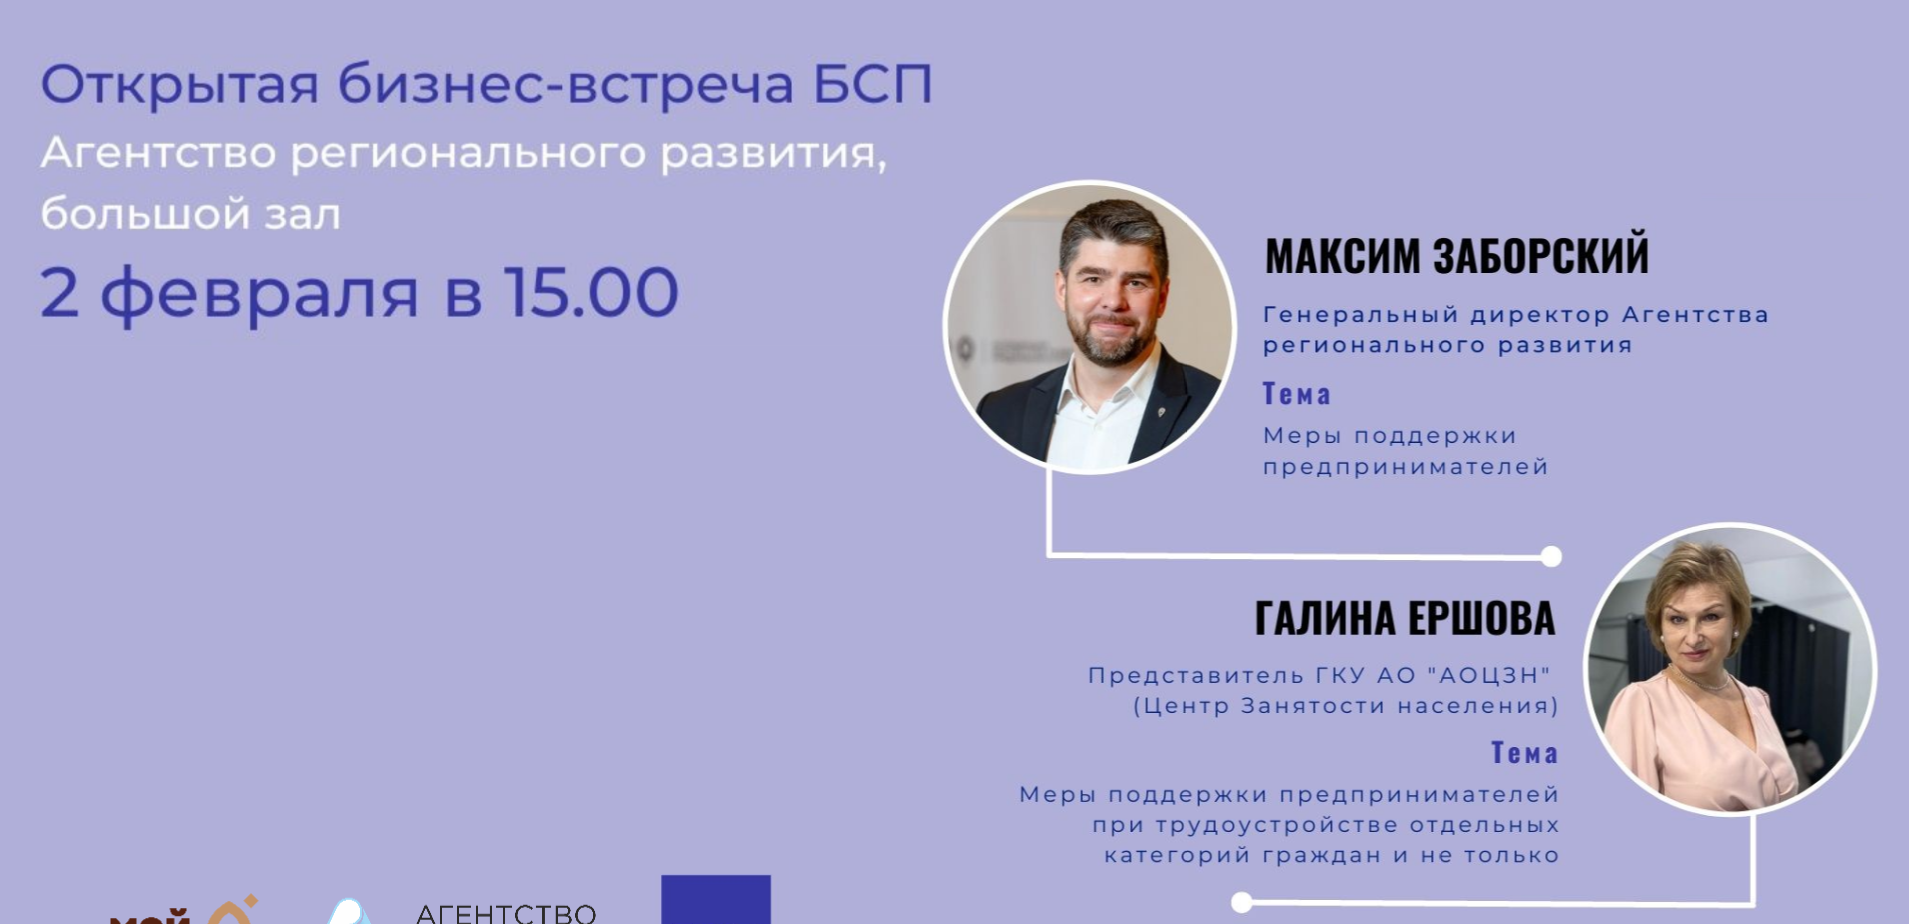 В Архангельске состоится открытая бизнес-встреча по вопросам господдержки предпринимателей